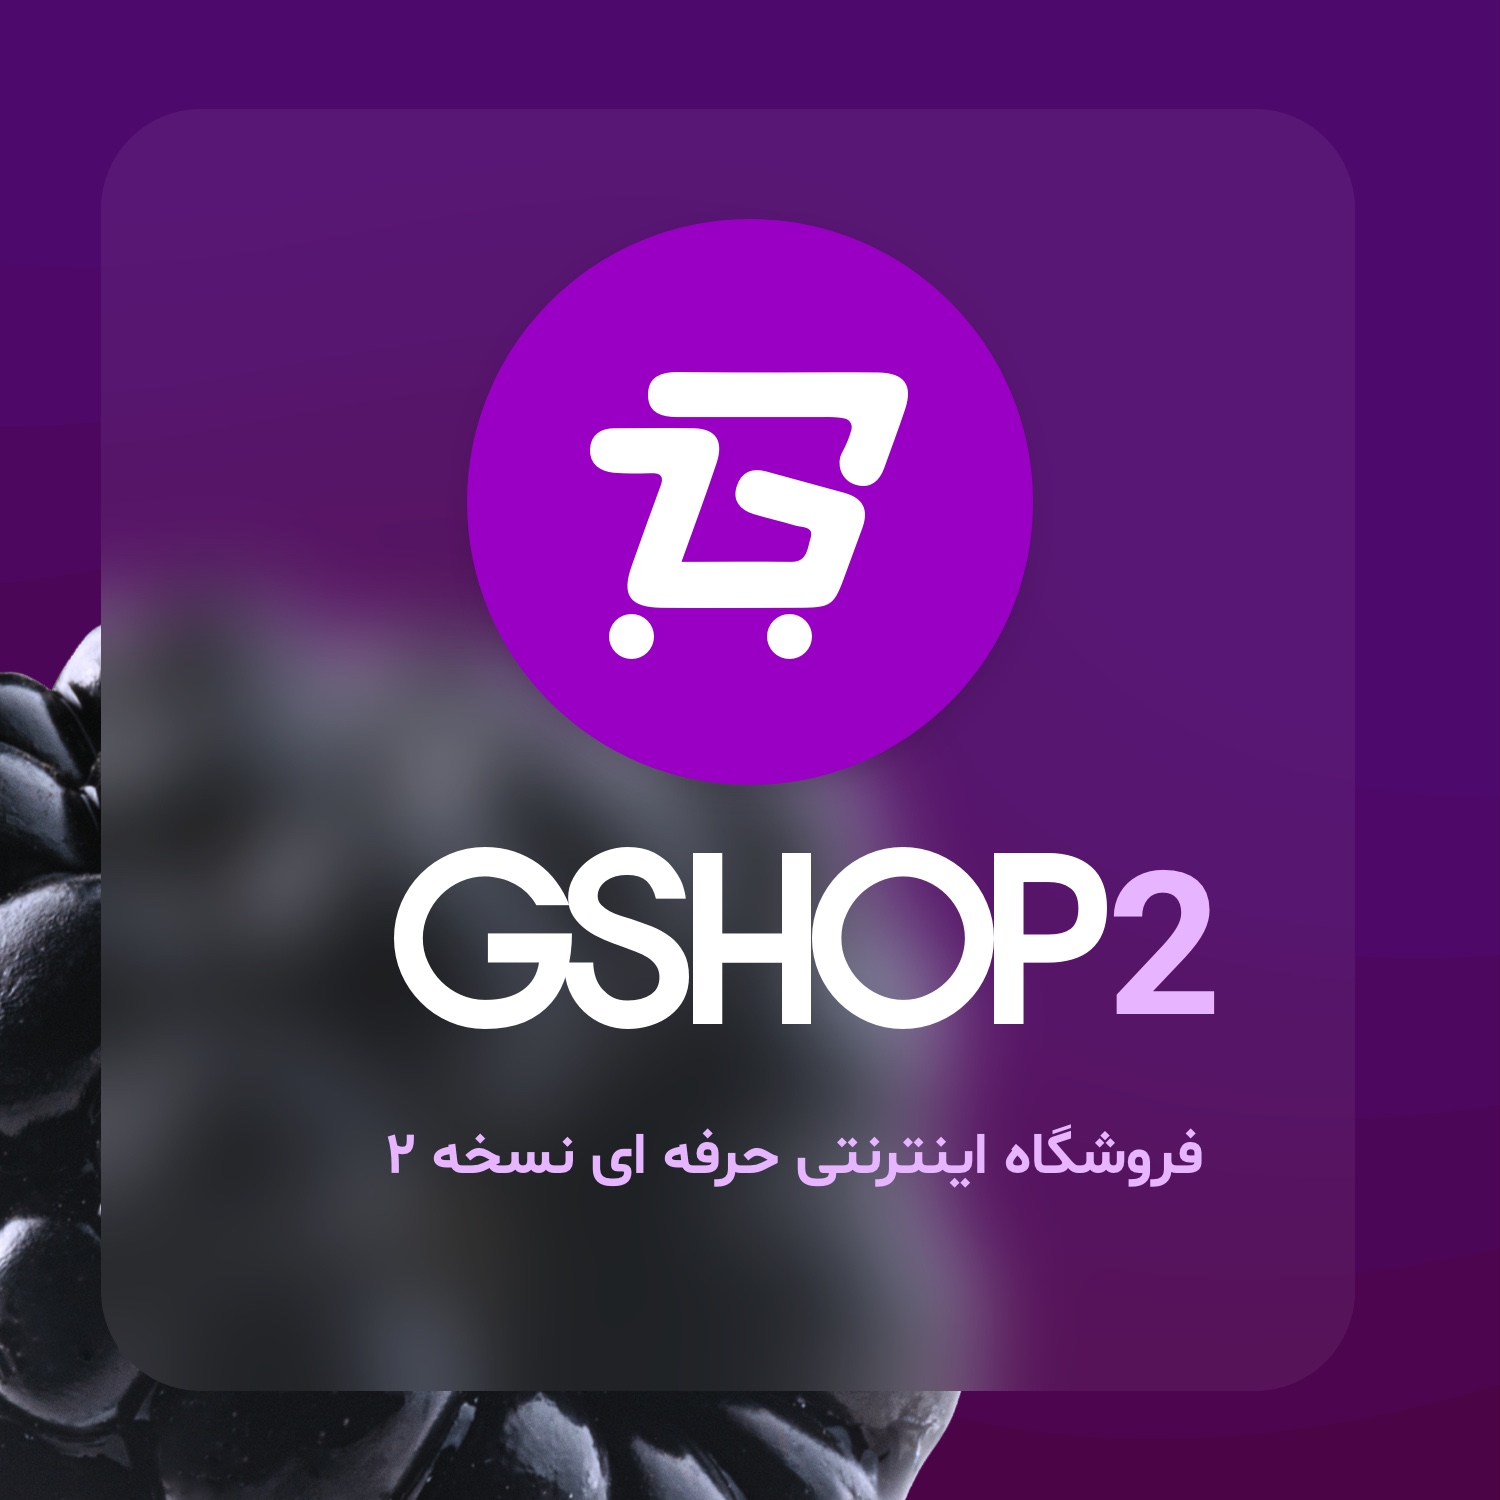 فروشگاه اینترنتی GSHOP 2